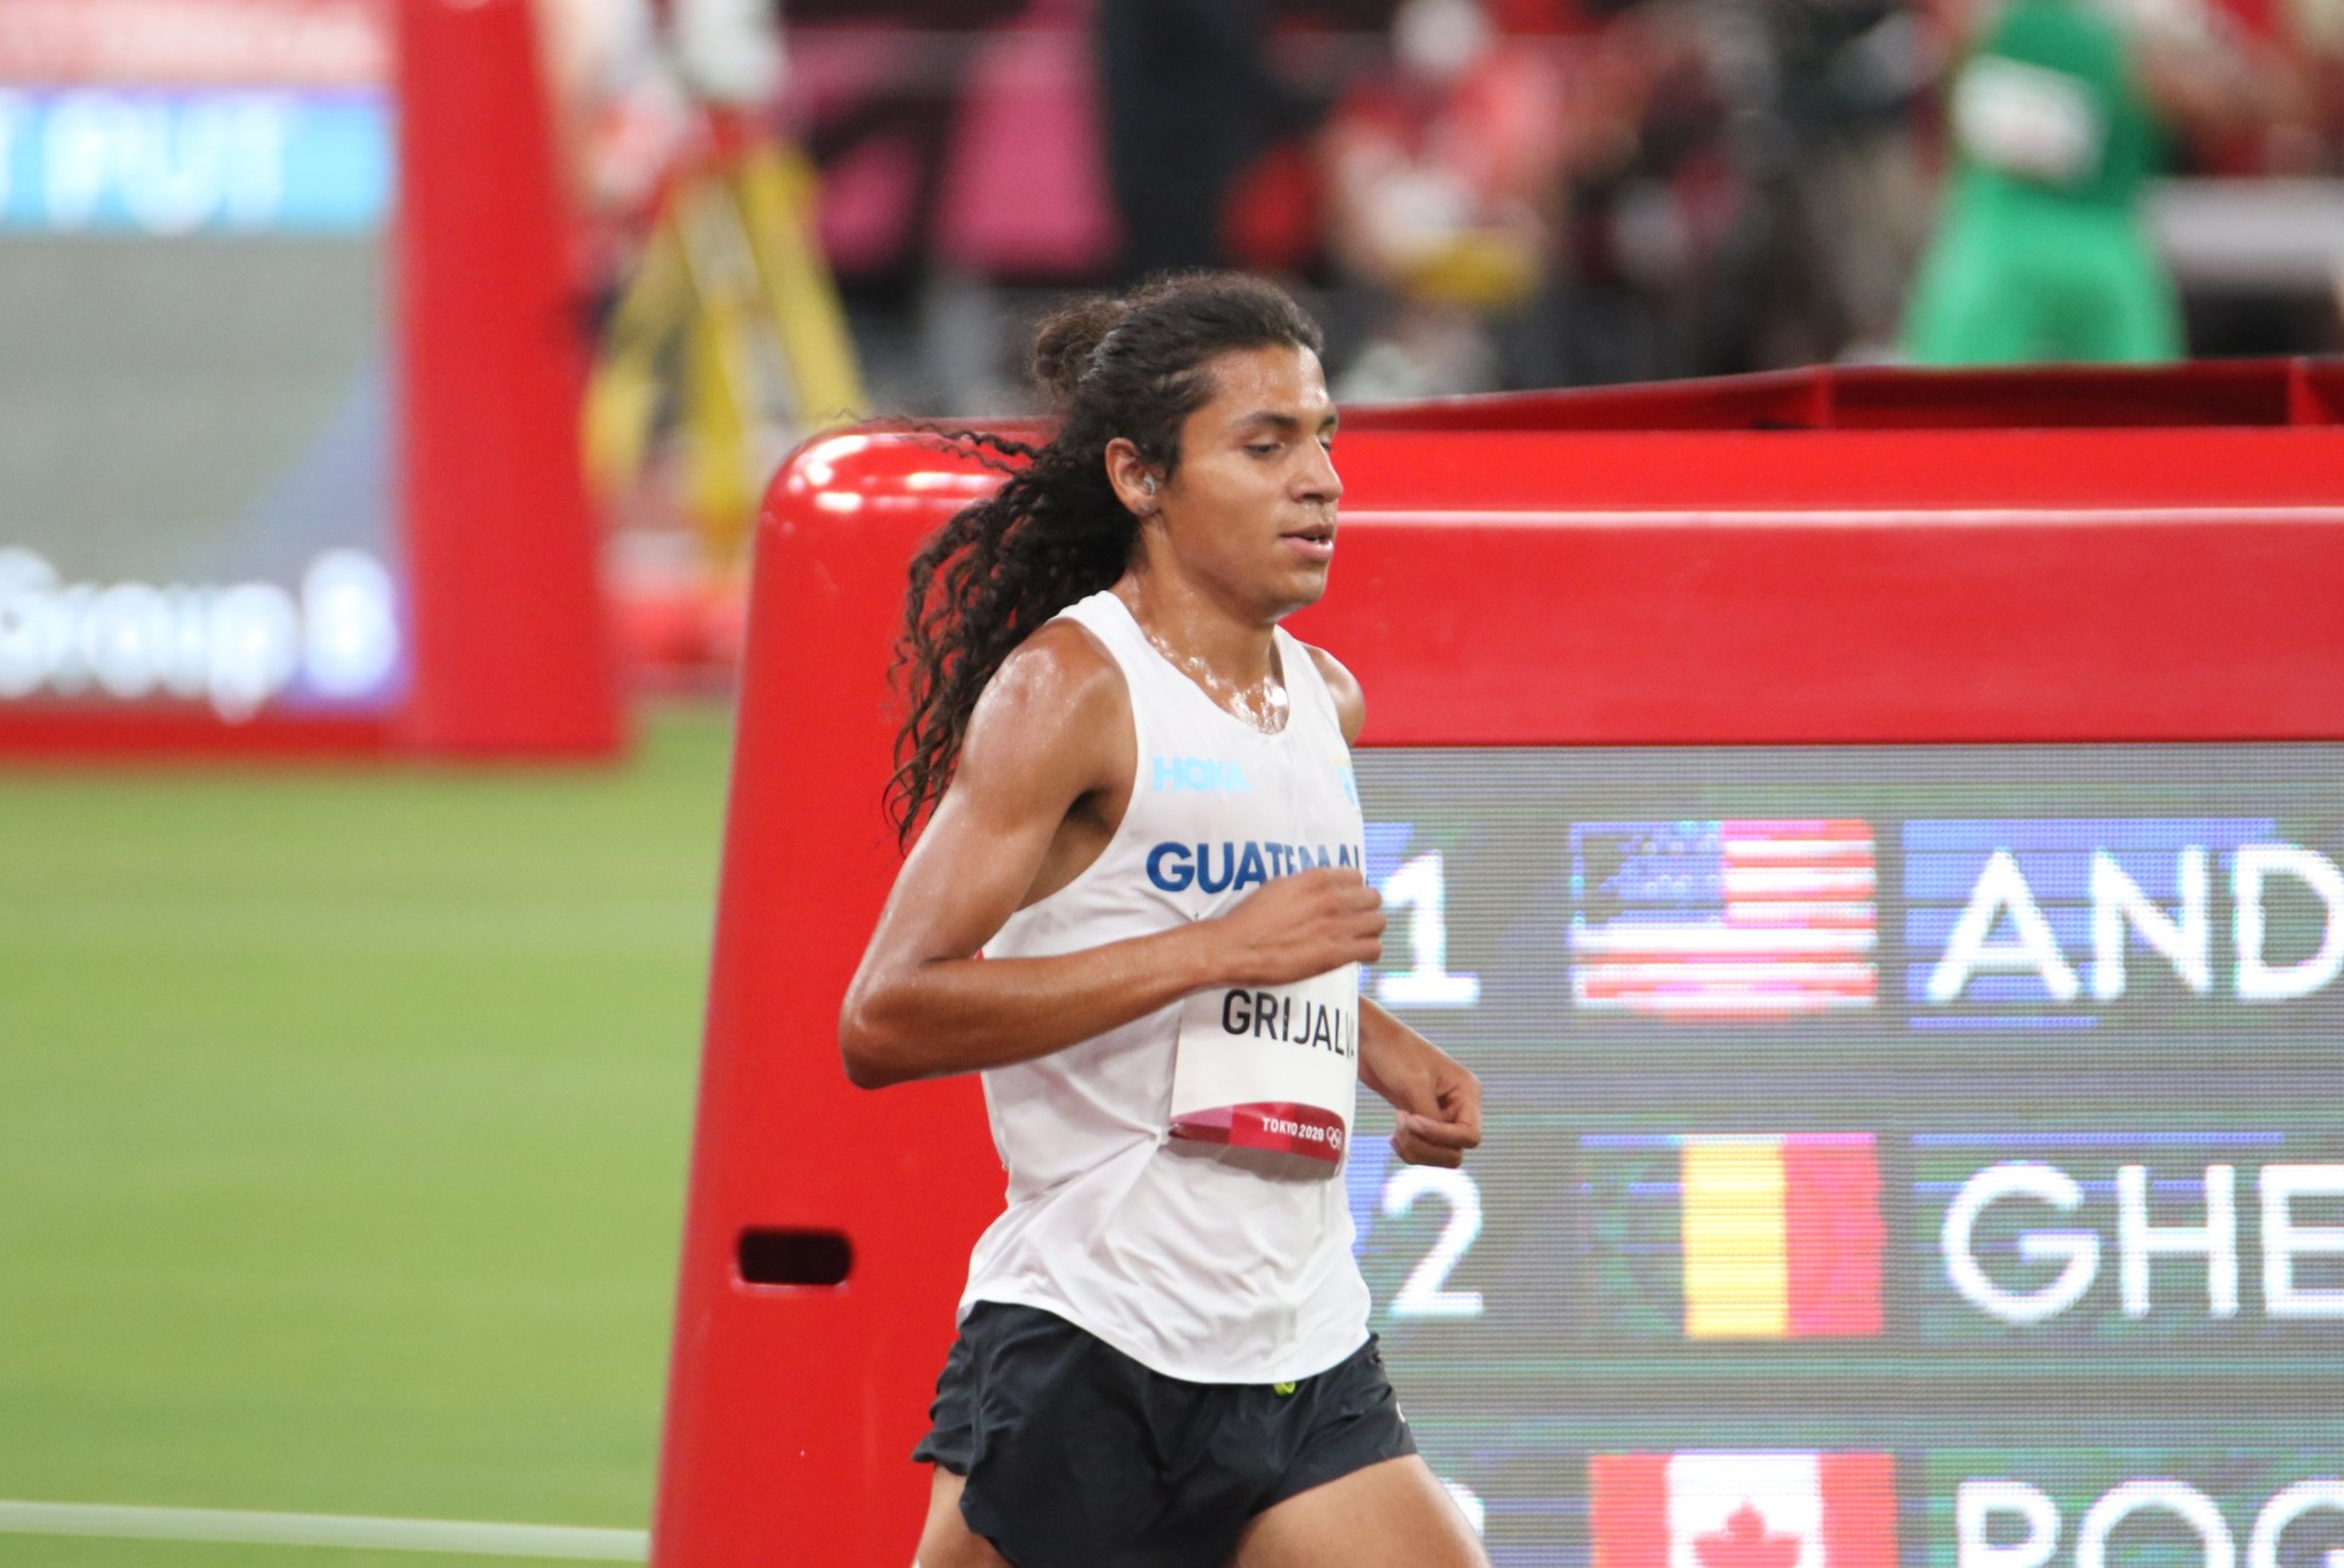 Luis Grijalva sorprendió en Tokio 2020 al clasificarse a la final de los 5,000 metros, donde al final terminó en el puesto 12. (Foto COG).